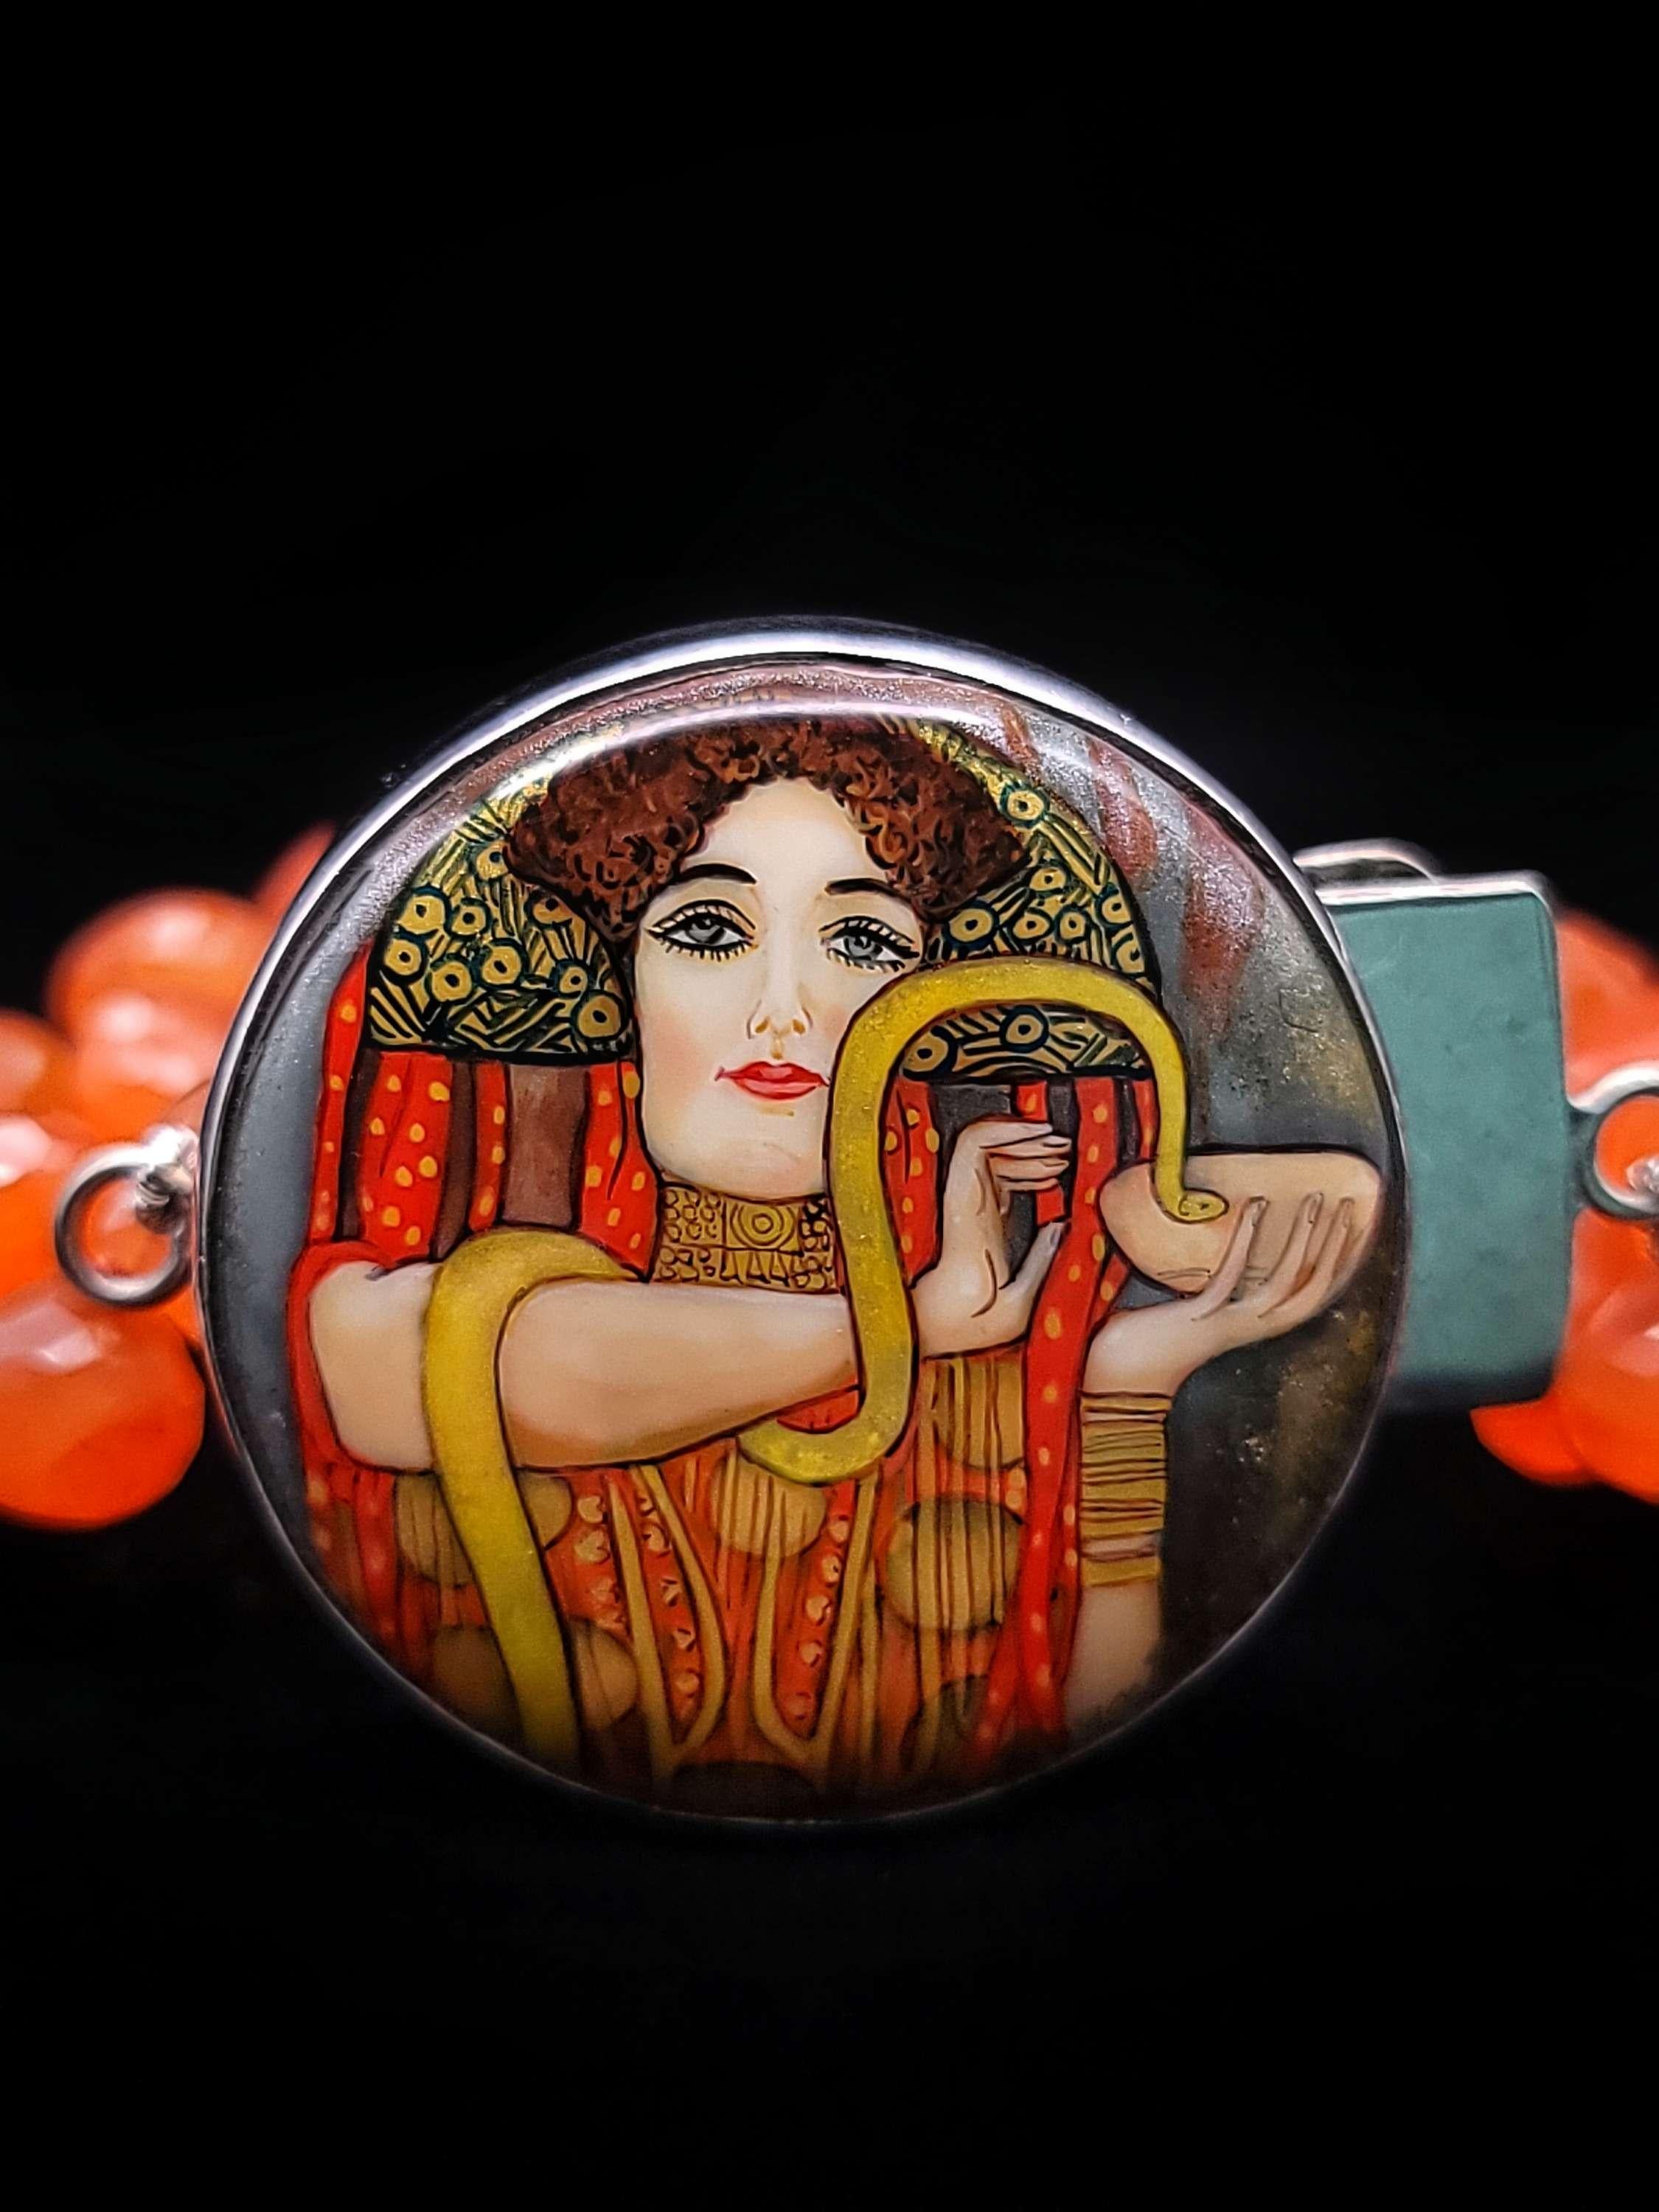 Dieses einzigartige, von Elaine Silverstein entworfene Armband ist ein atemberaubendes Kunstwerk, das die Schönheit und Handwerkskunst der russischen Miniaturisten zeigt. Das Herzstück des Armbands ist eine sorgfältig reduzierte Wiedergabe von